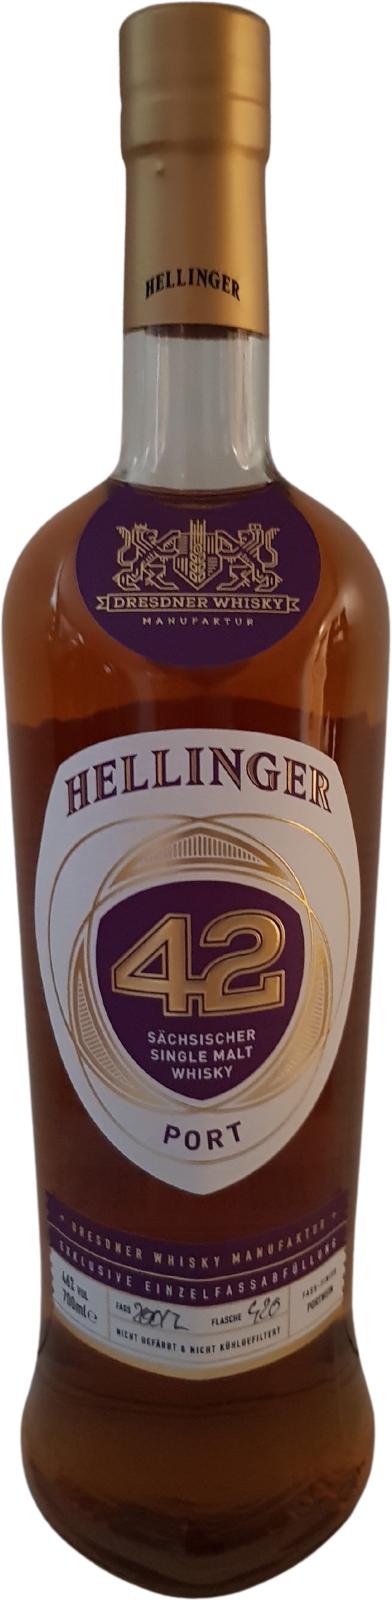 Hellinger 42